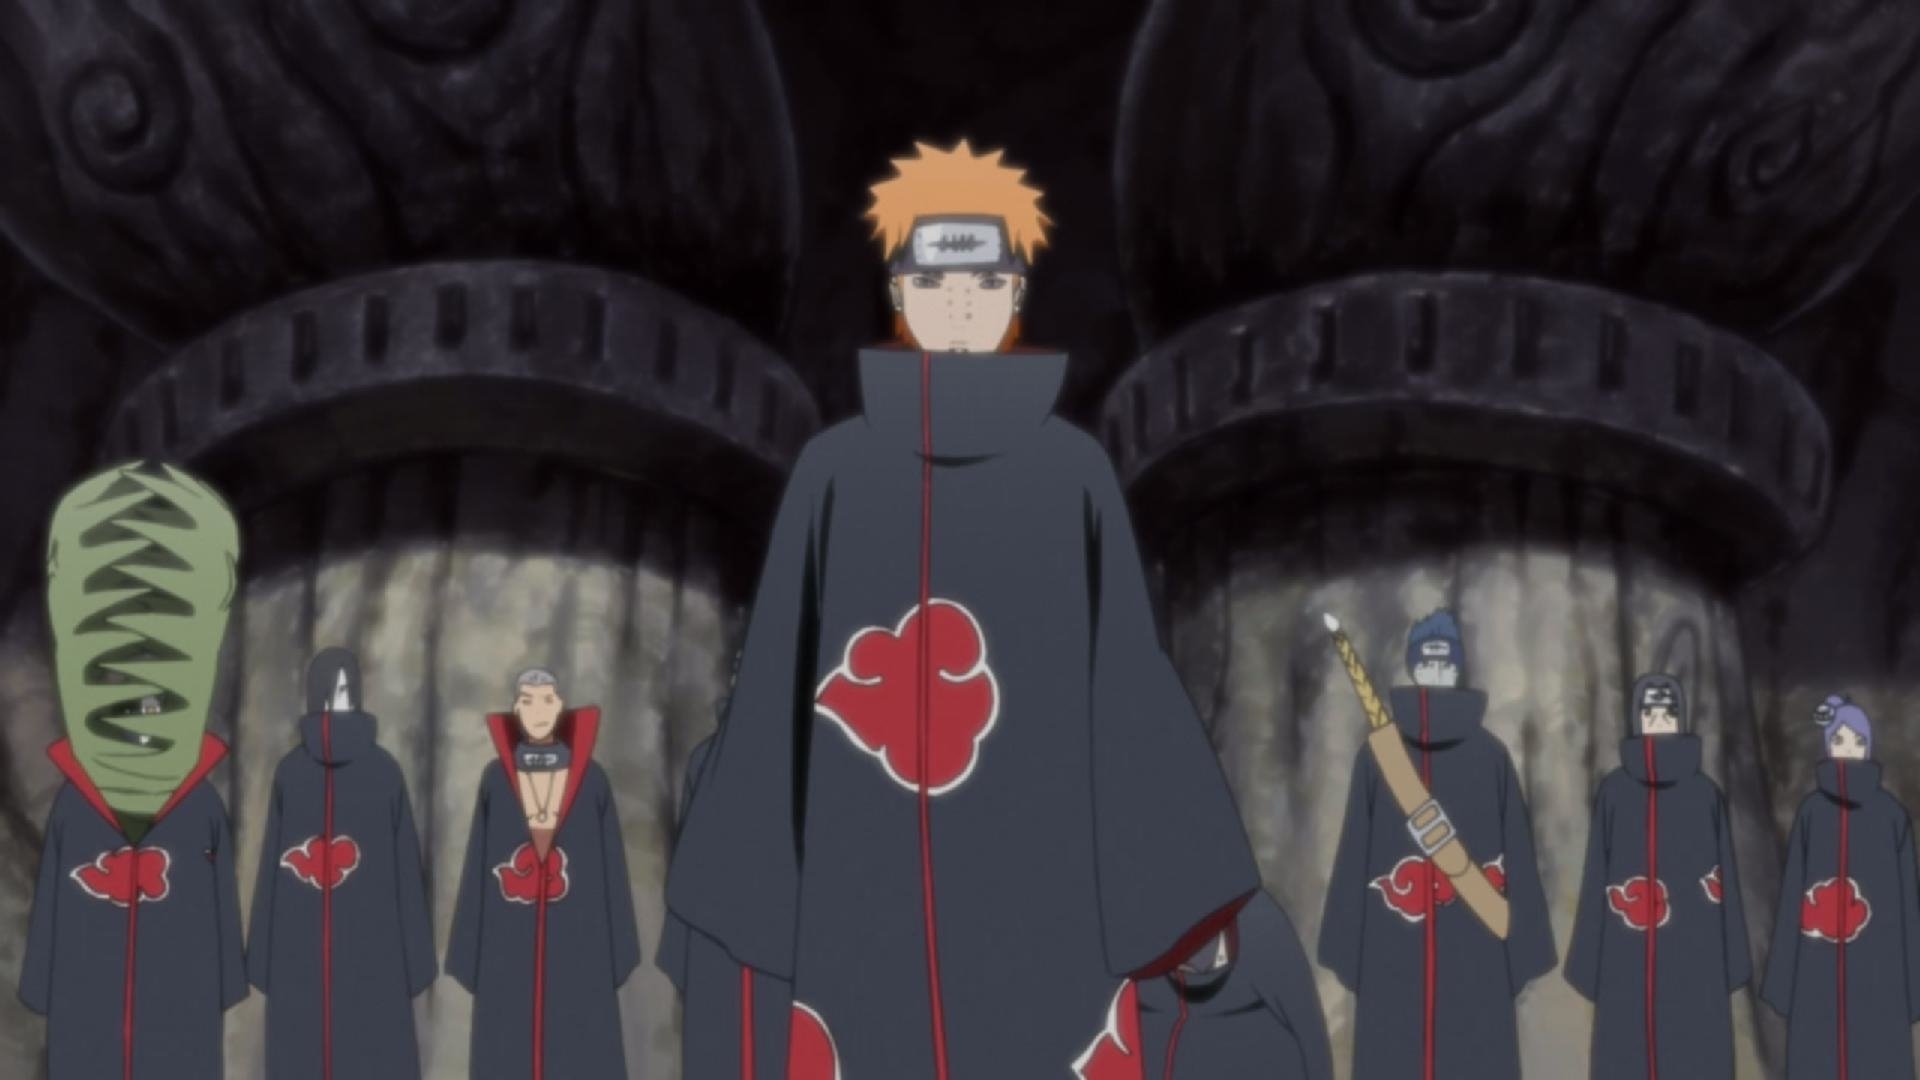 Pain Naruto - HD Wallpaper 